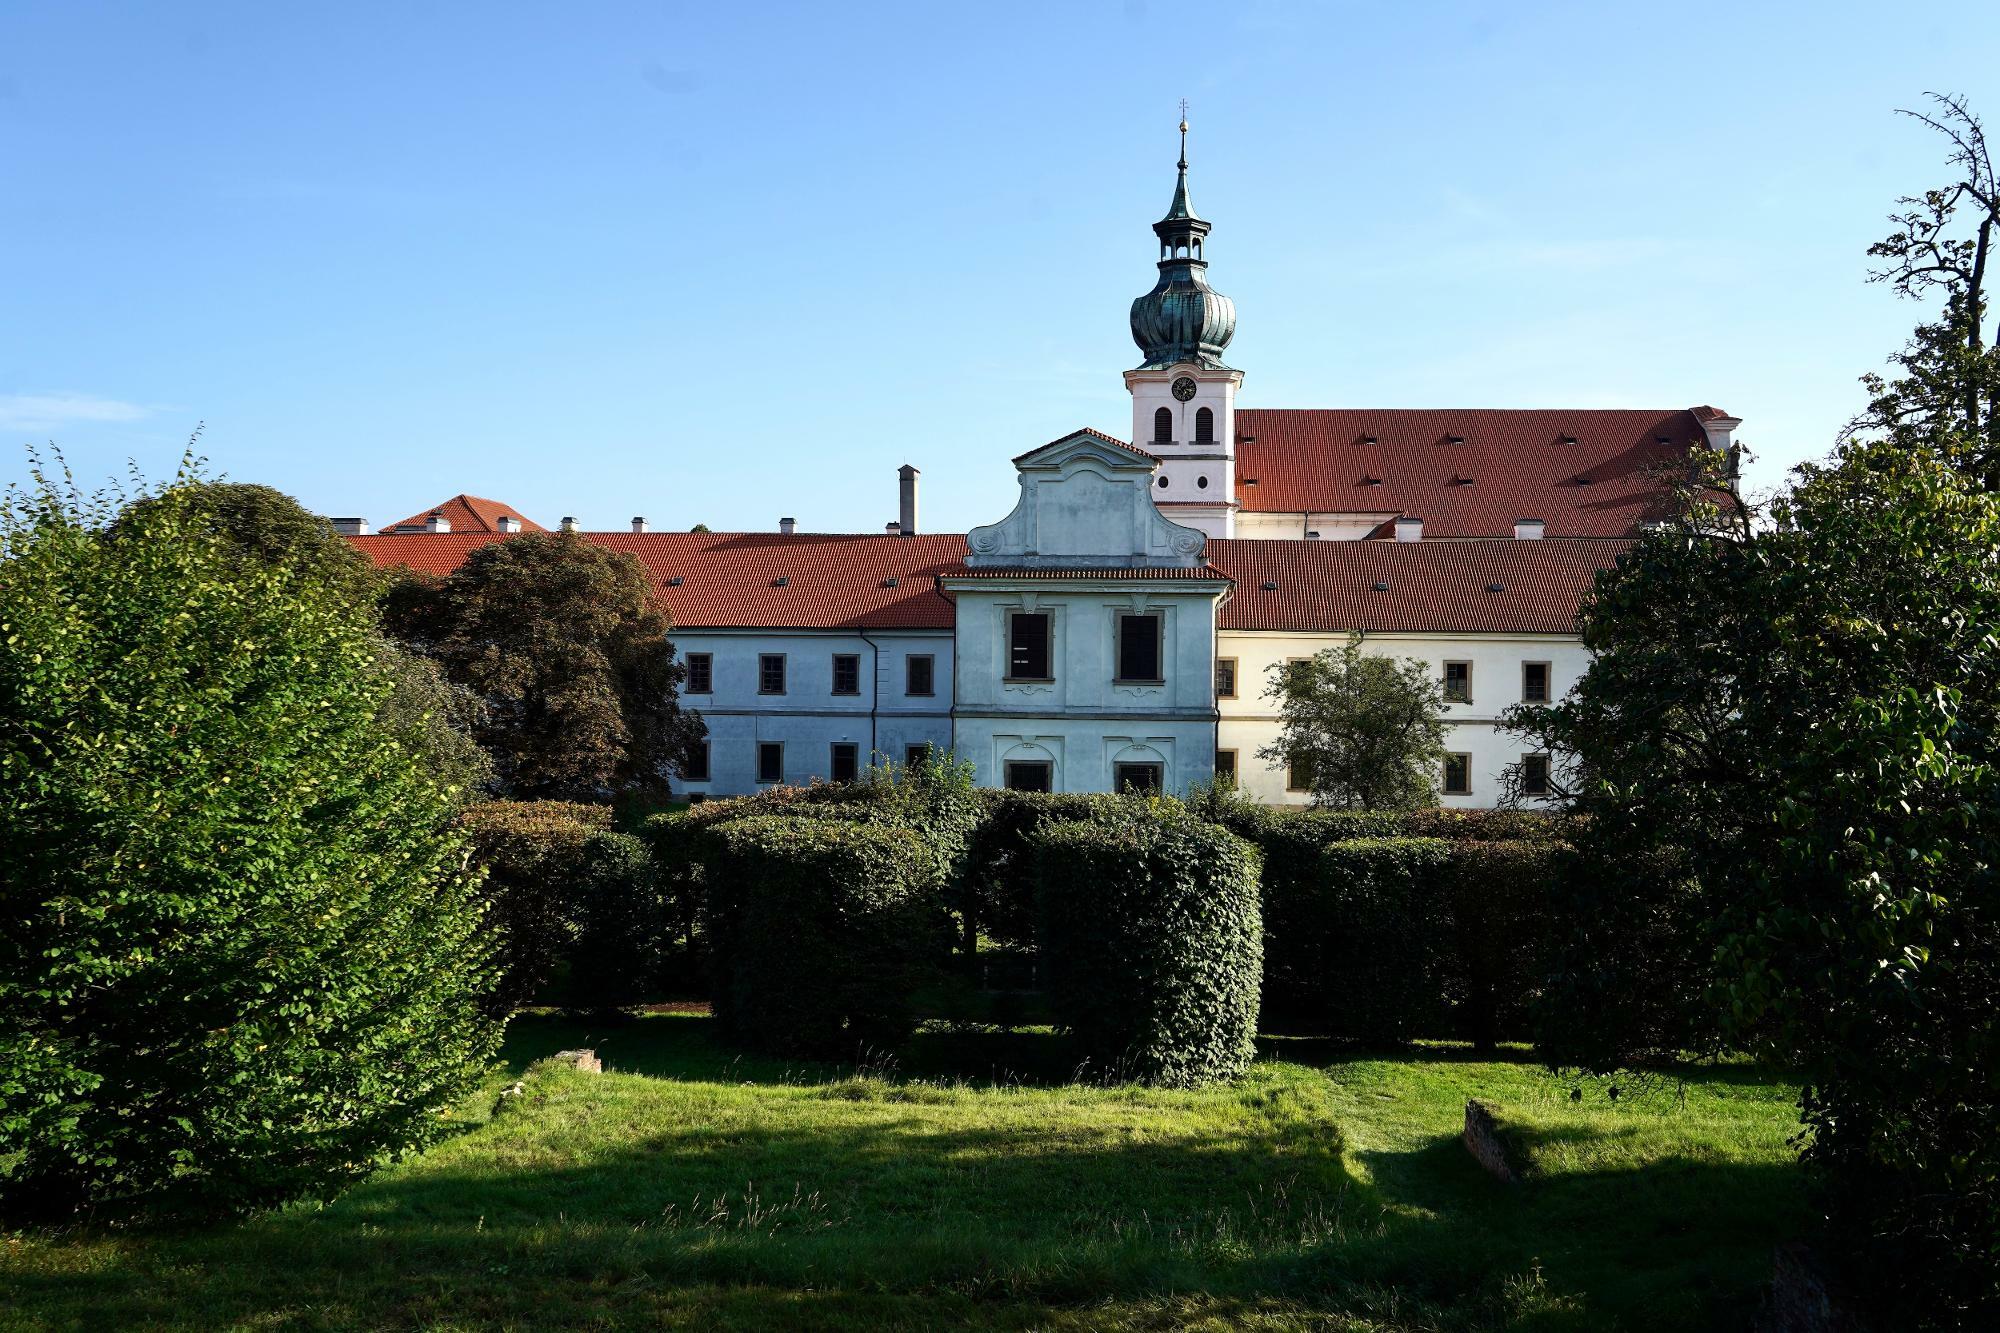 ▲チェコ最古のビール醸造所のひとつ Břevnov（ブジェヴノフ）修道院